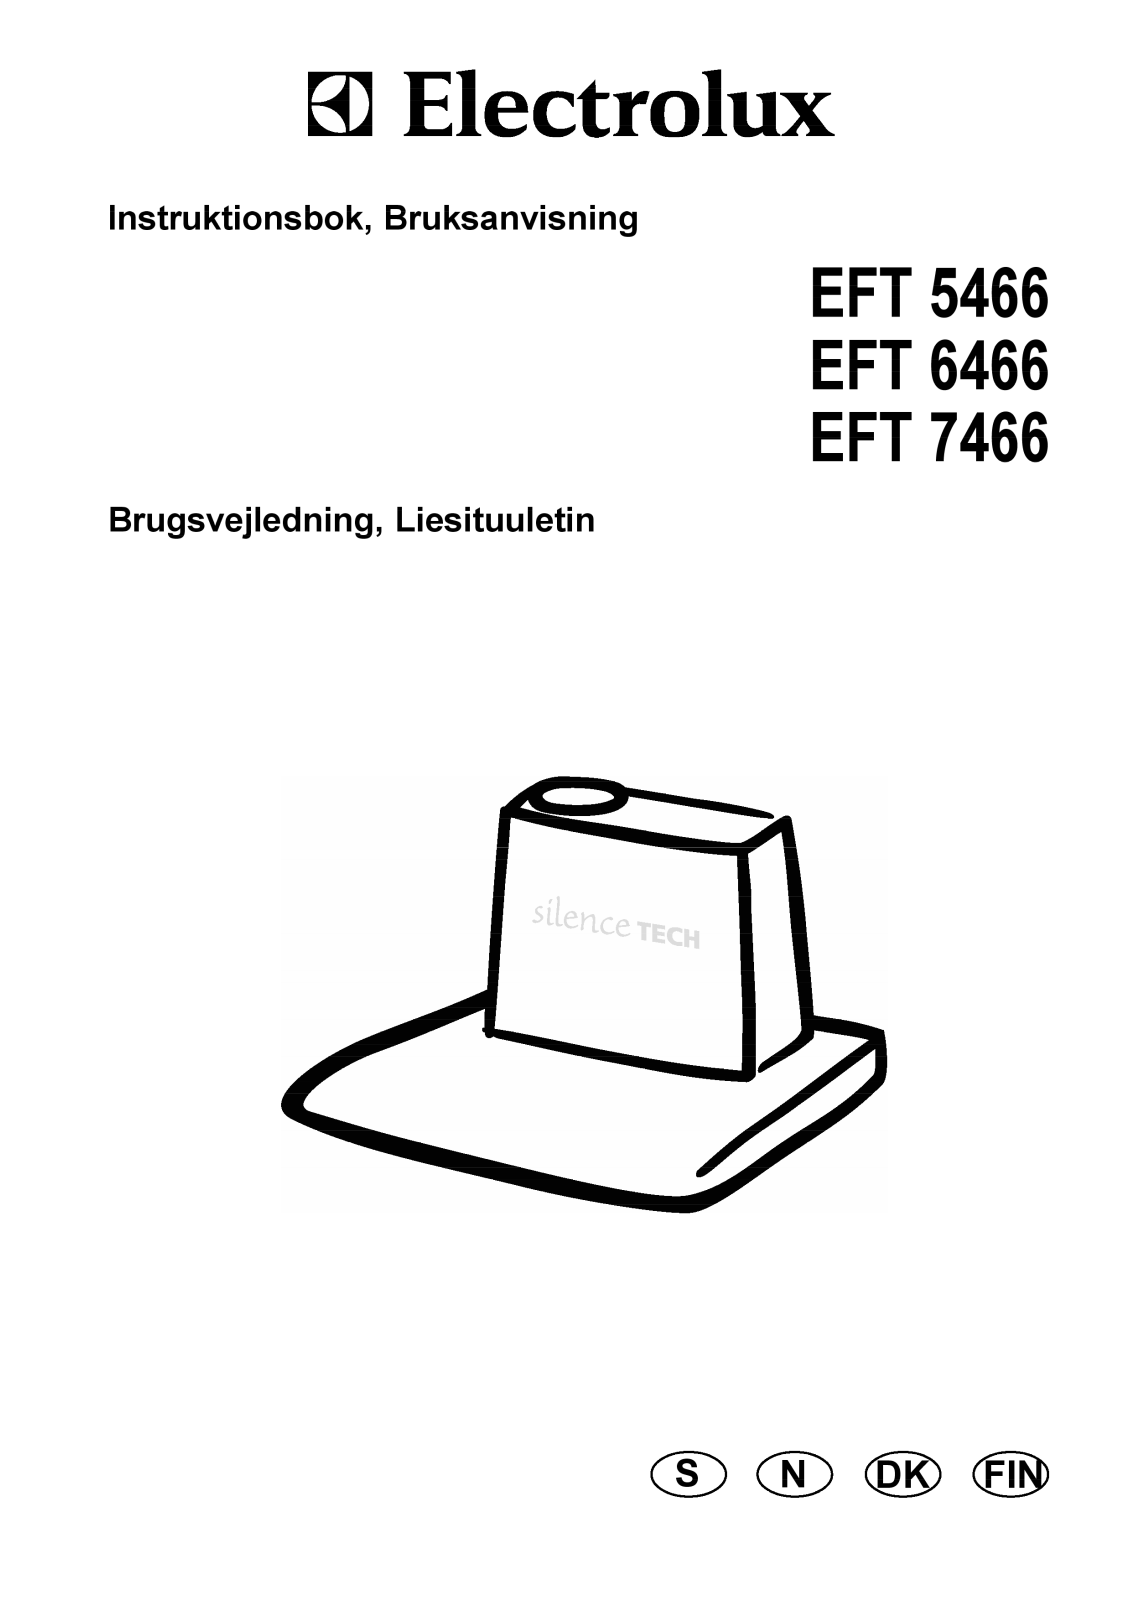 AEG EFT7405X/S, EFT7466/S, EFT5466U/S, EFT6466U/S, EFT7466K/S Manual